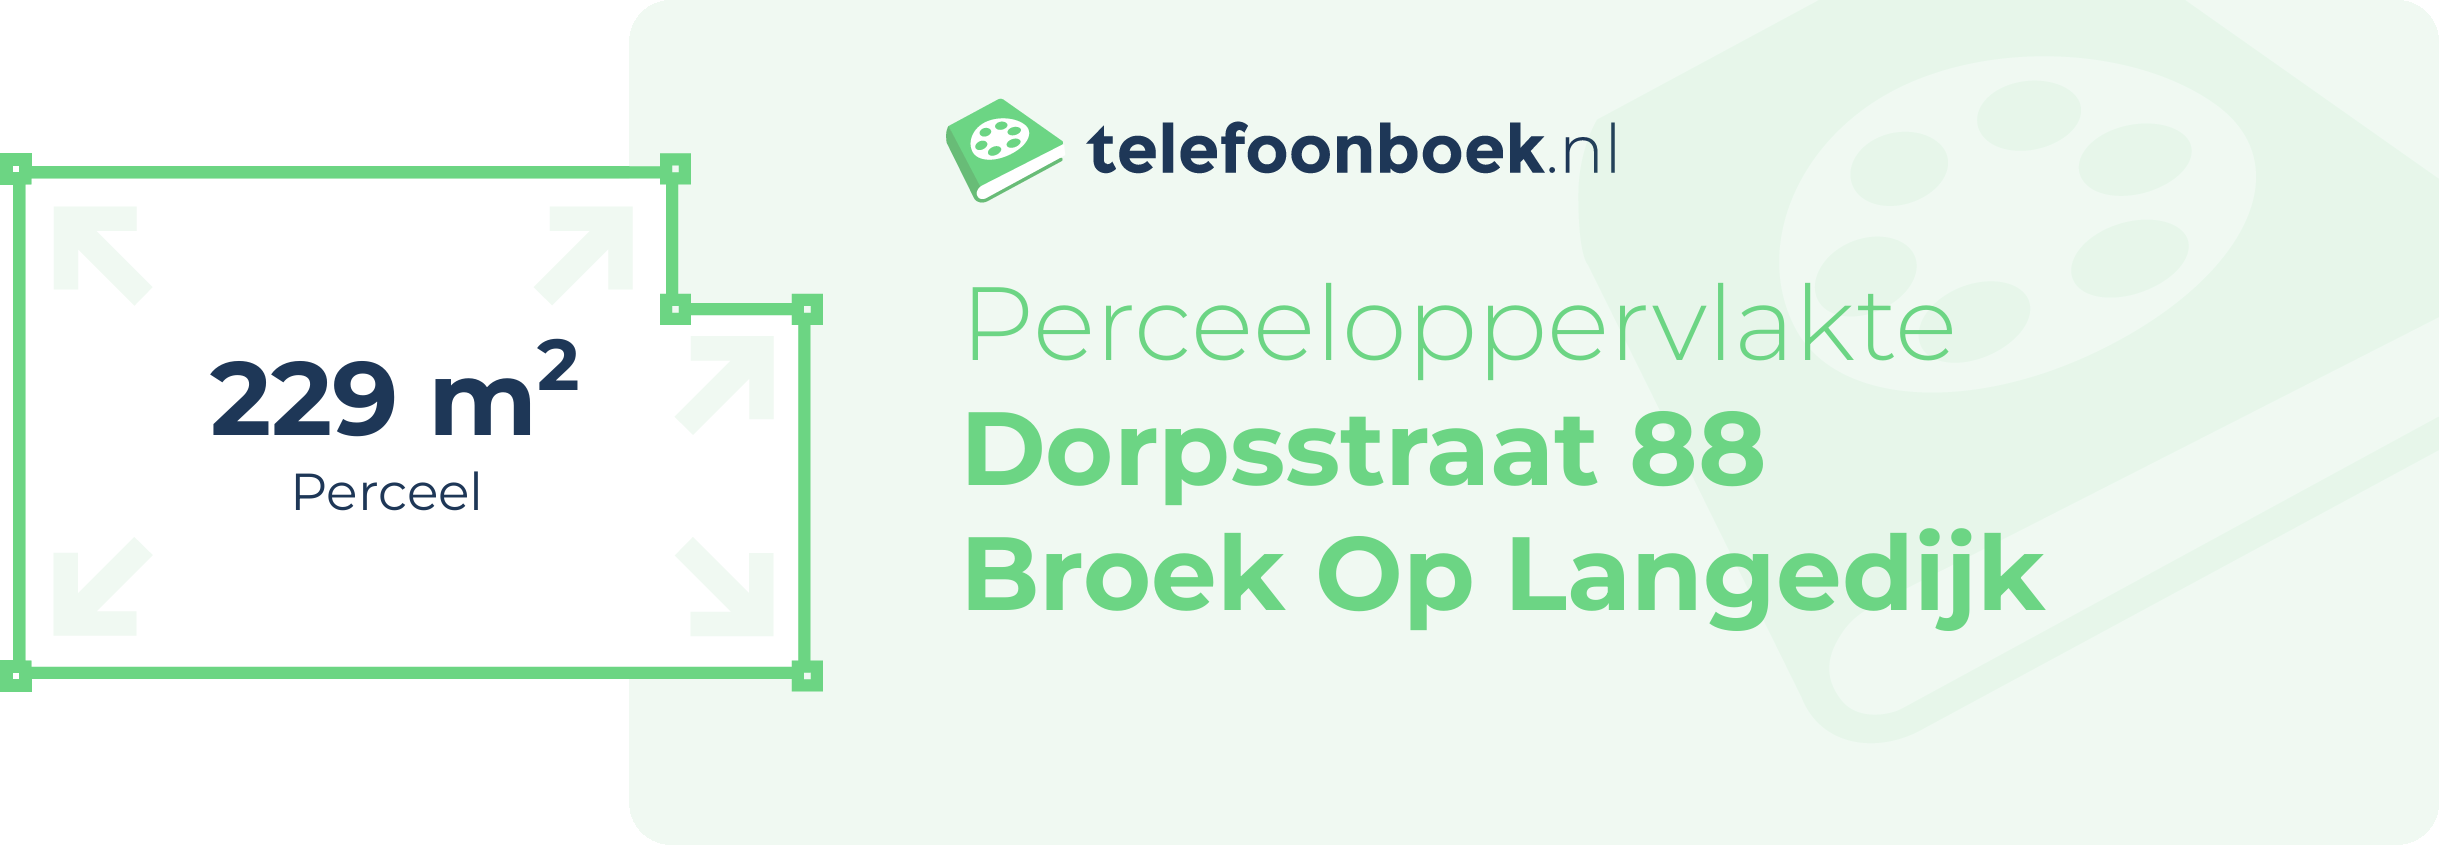 Perceeloppervlakte Dorpsstraat 88 Broek Op Langedijk